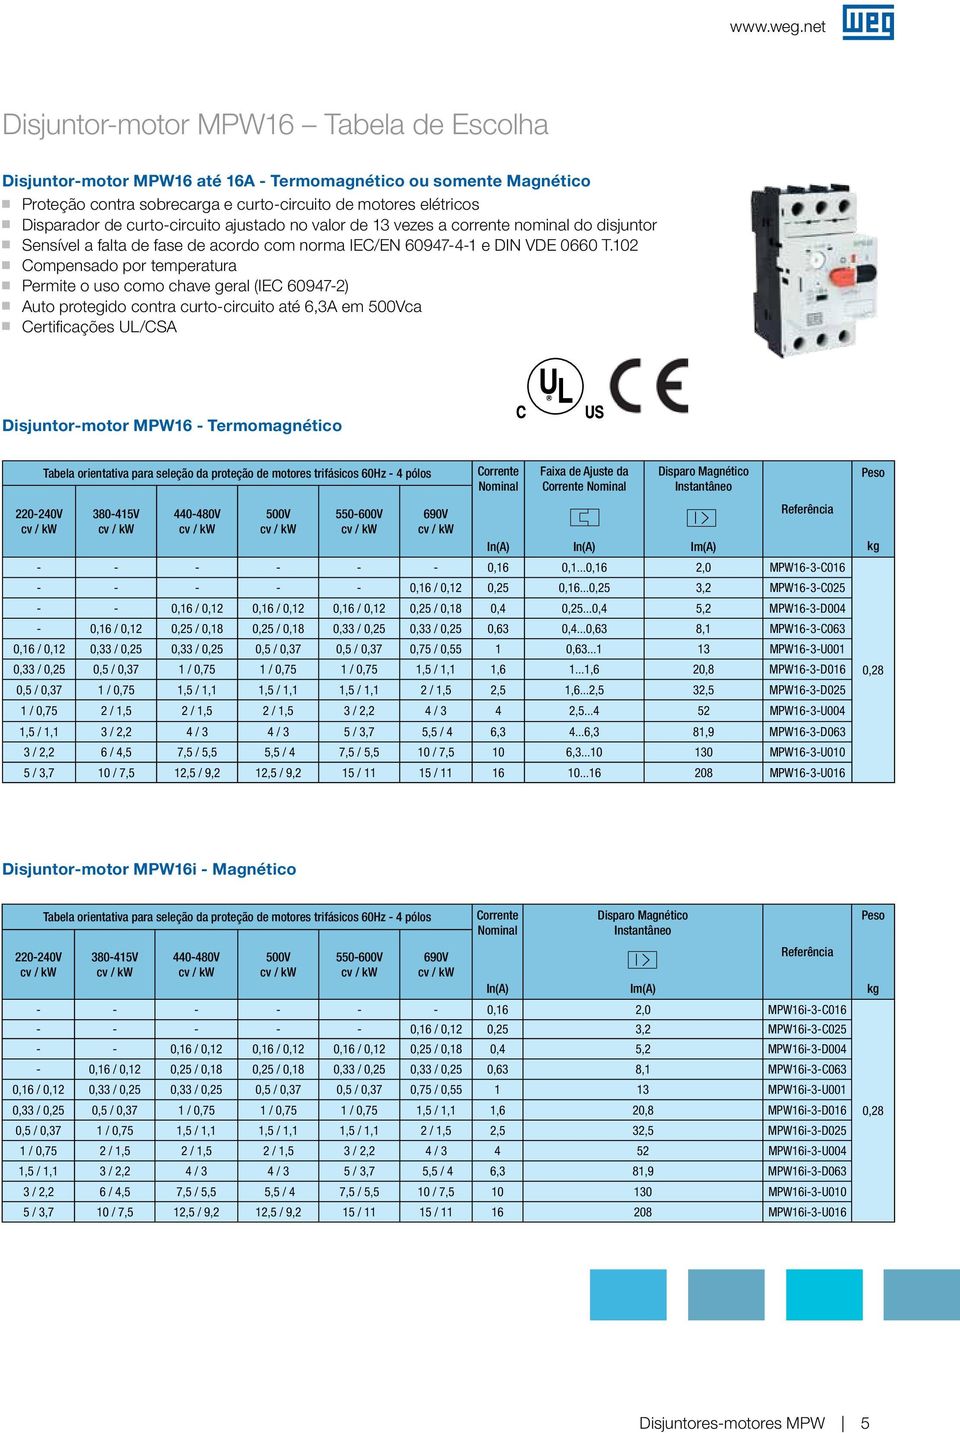 102 Compensado por temperatura Permite o uso como chave eral (IEC 60947-2) Auto proteido contra curto-circuito até 6,3A em 500Vca Certificações UL/CSA Disjuntor-motor MPW16 - Termomanético 220-240V